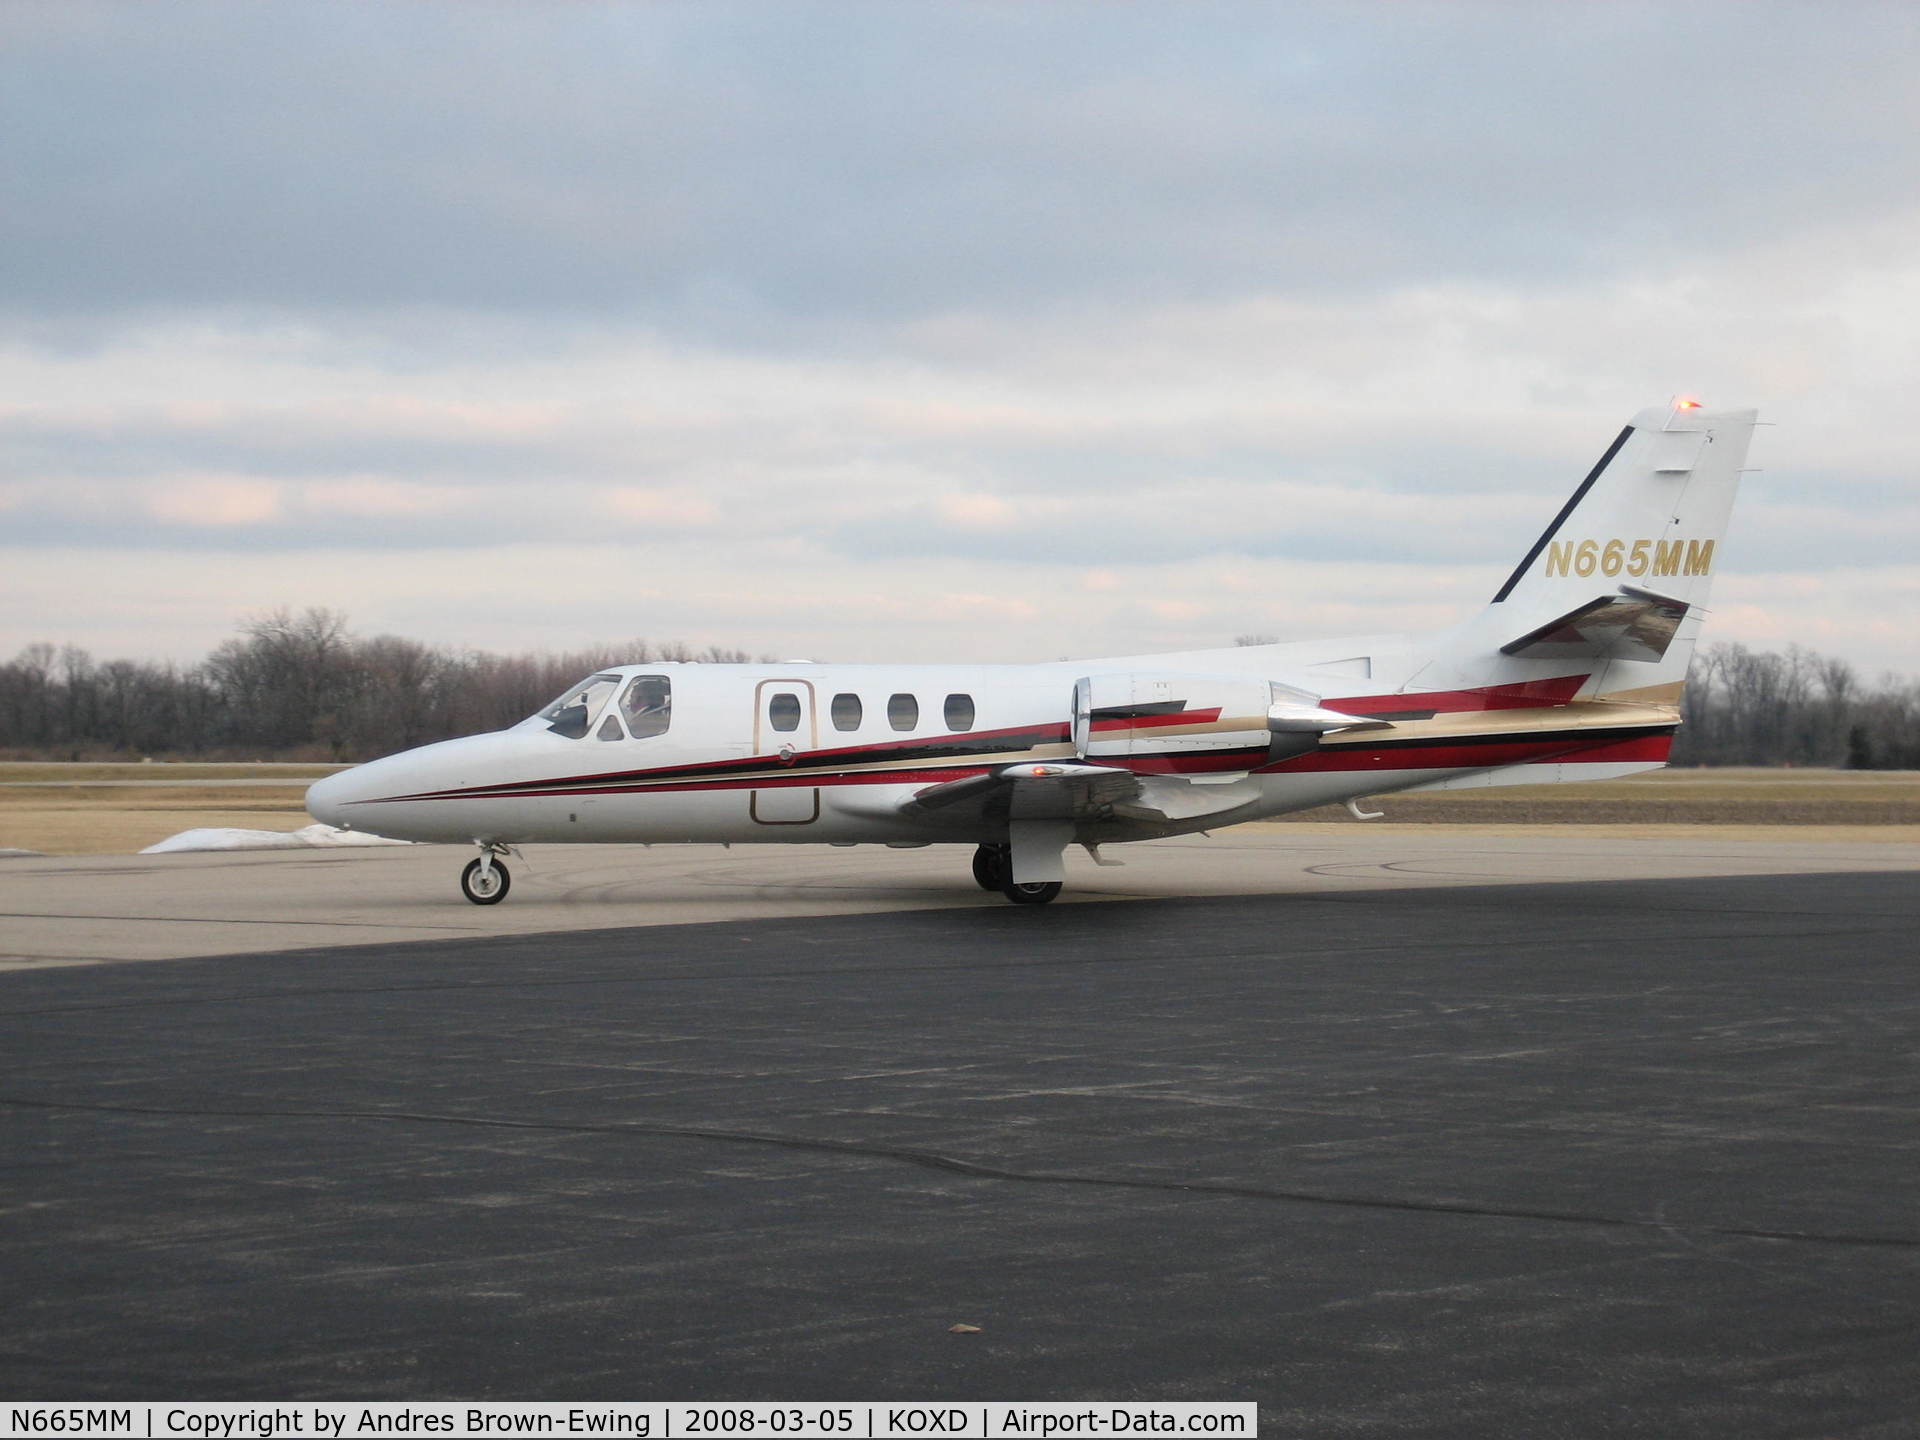 N665MM, 1981 Cessna 501 Citation I/SP C/N 501-0228, Departing for Akron after a campus visit